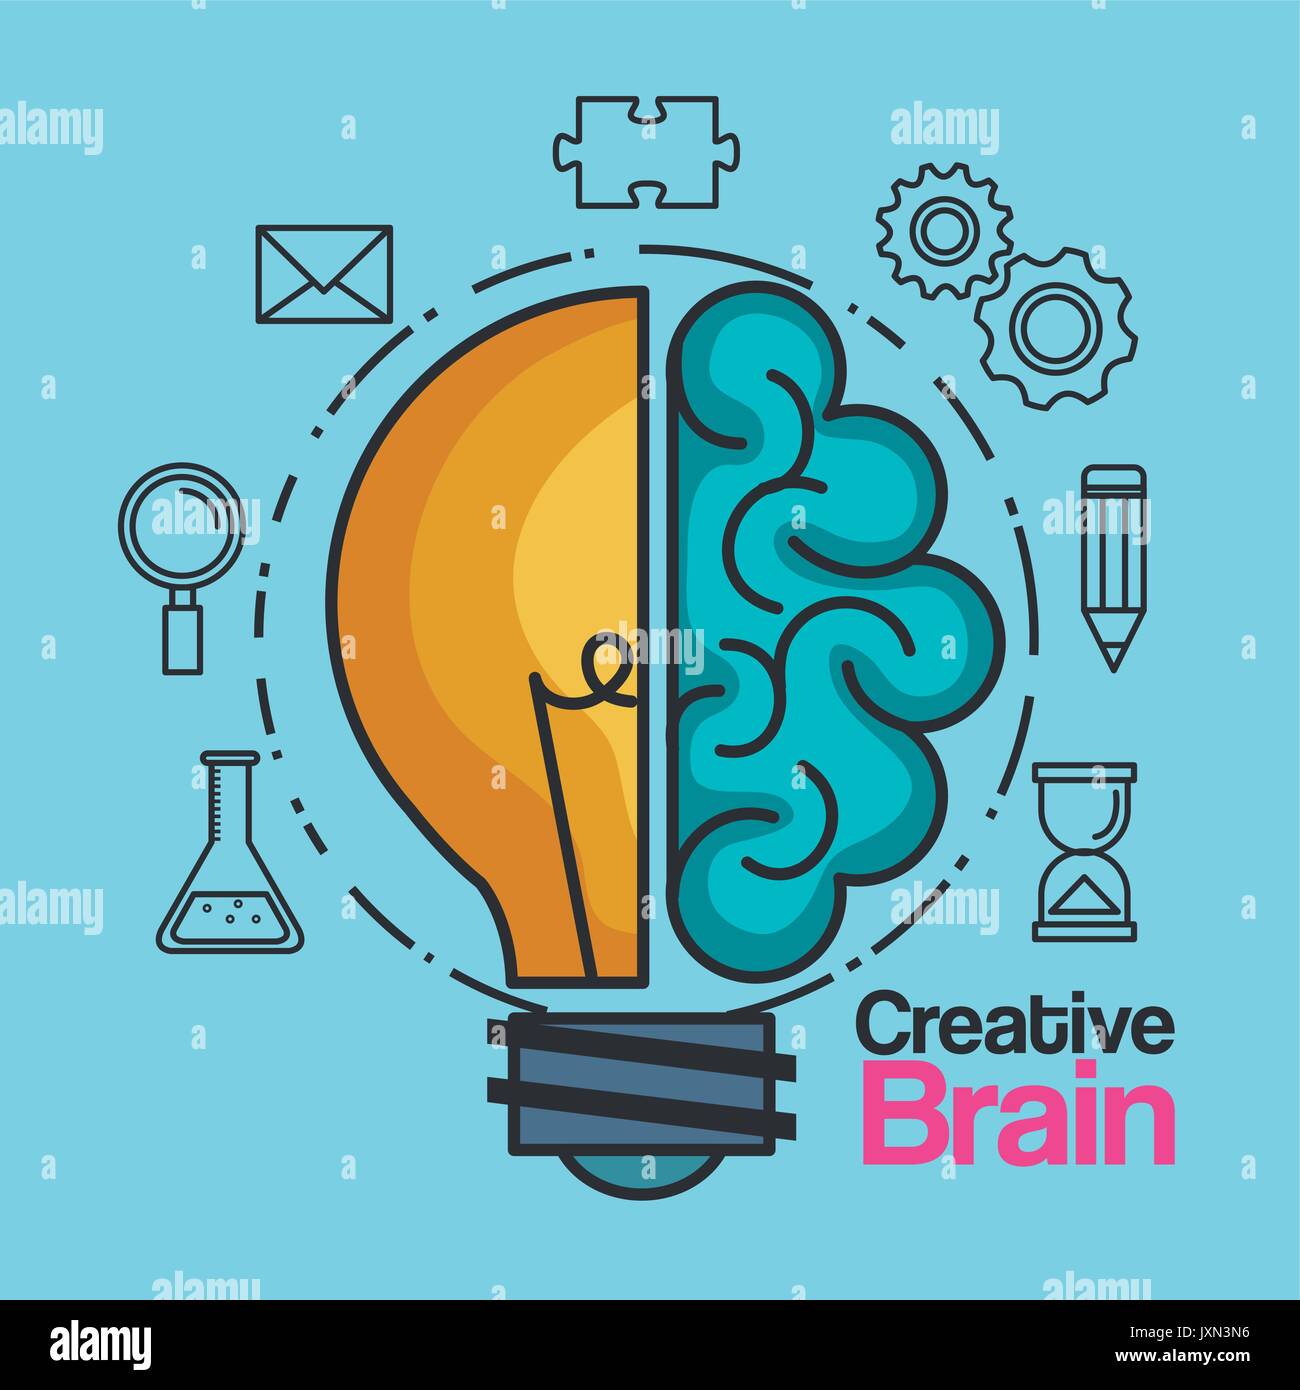 Kreative Gehirn Idee Glühbirne innovation Stock Vektor